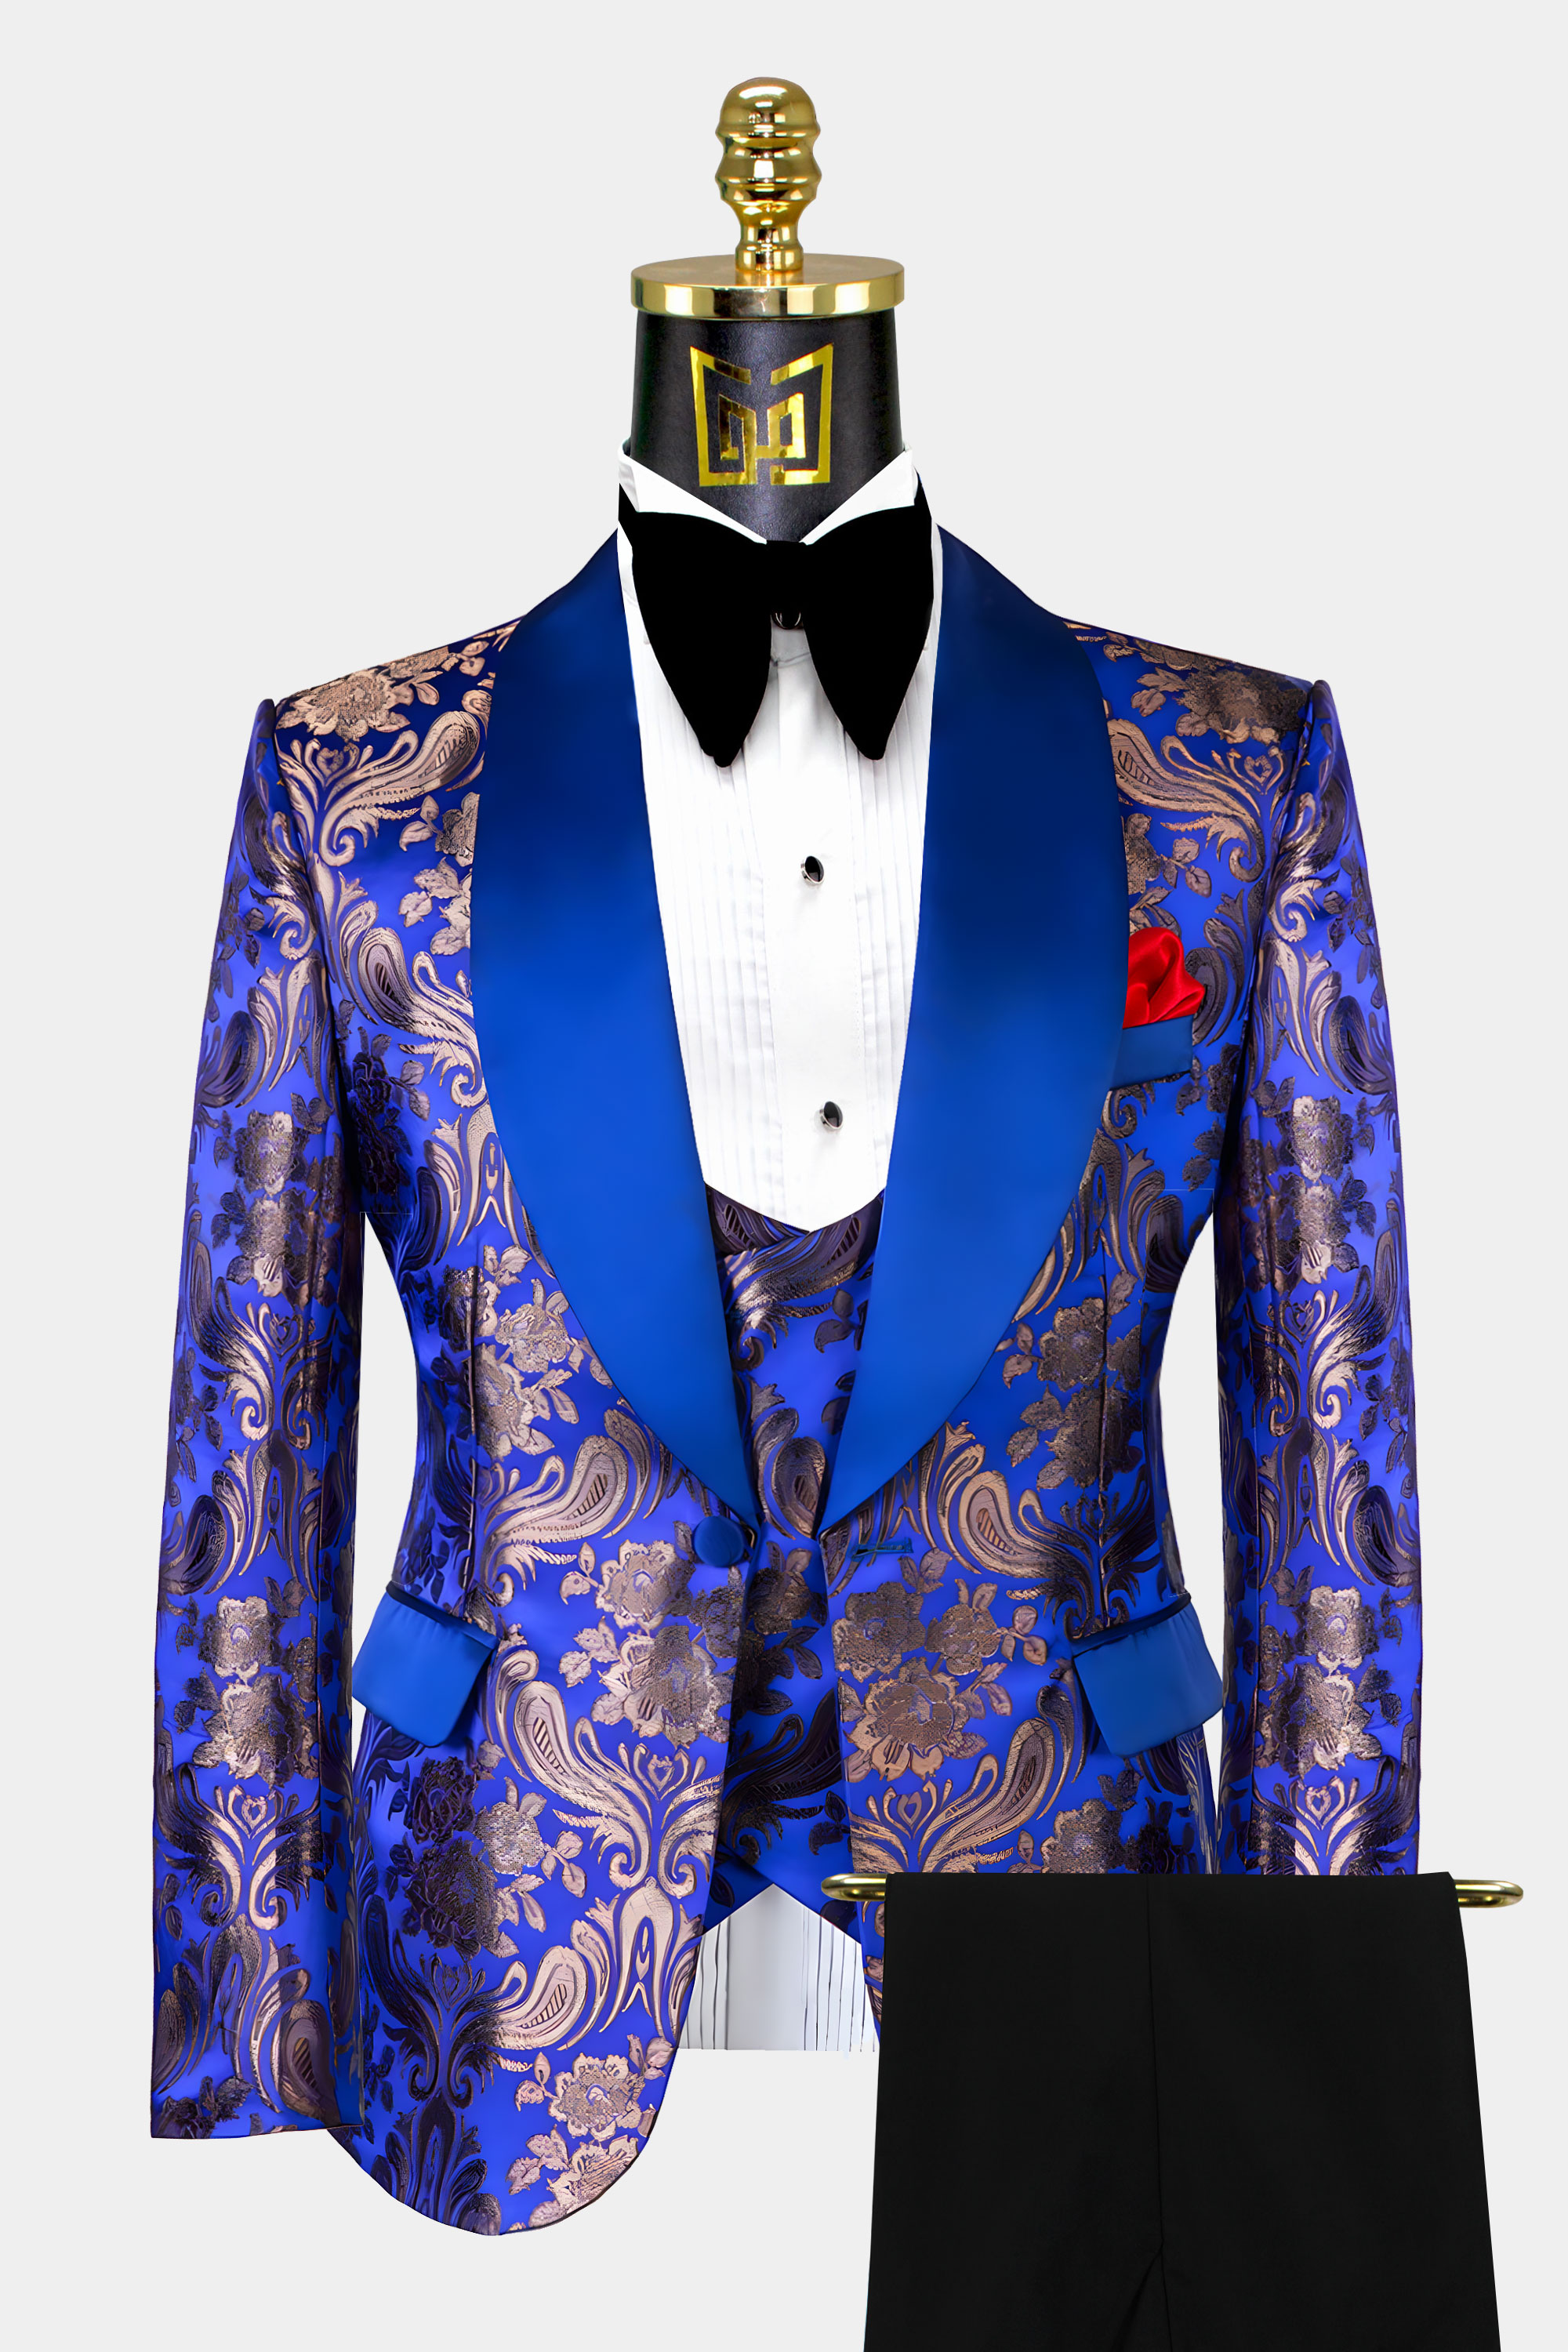 Royal-Blue-Wedding-Tuxedo-Groom-Suit-from-Gentlemans-Guru.com